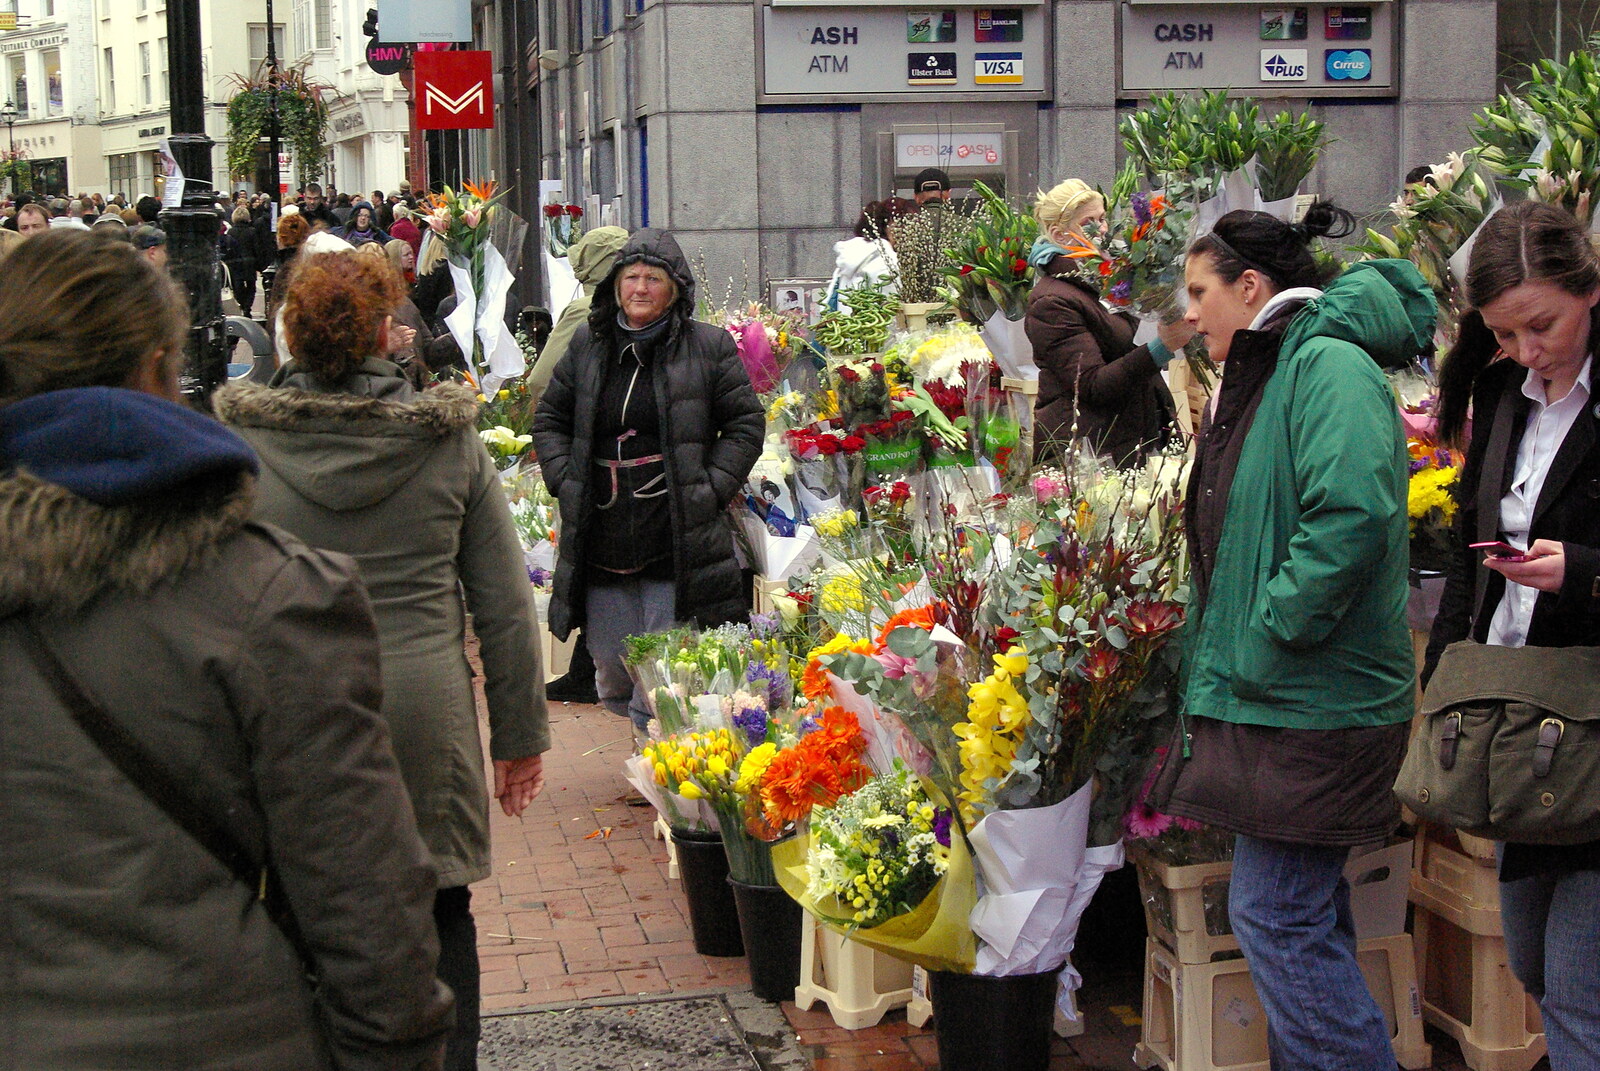 Easter in Dublin, Ireland - 21st March 2008: The flower stalls on Grafton Street